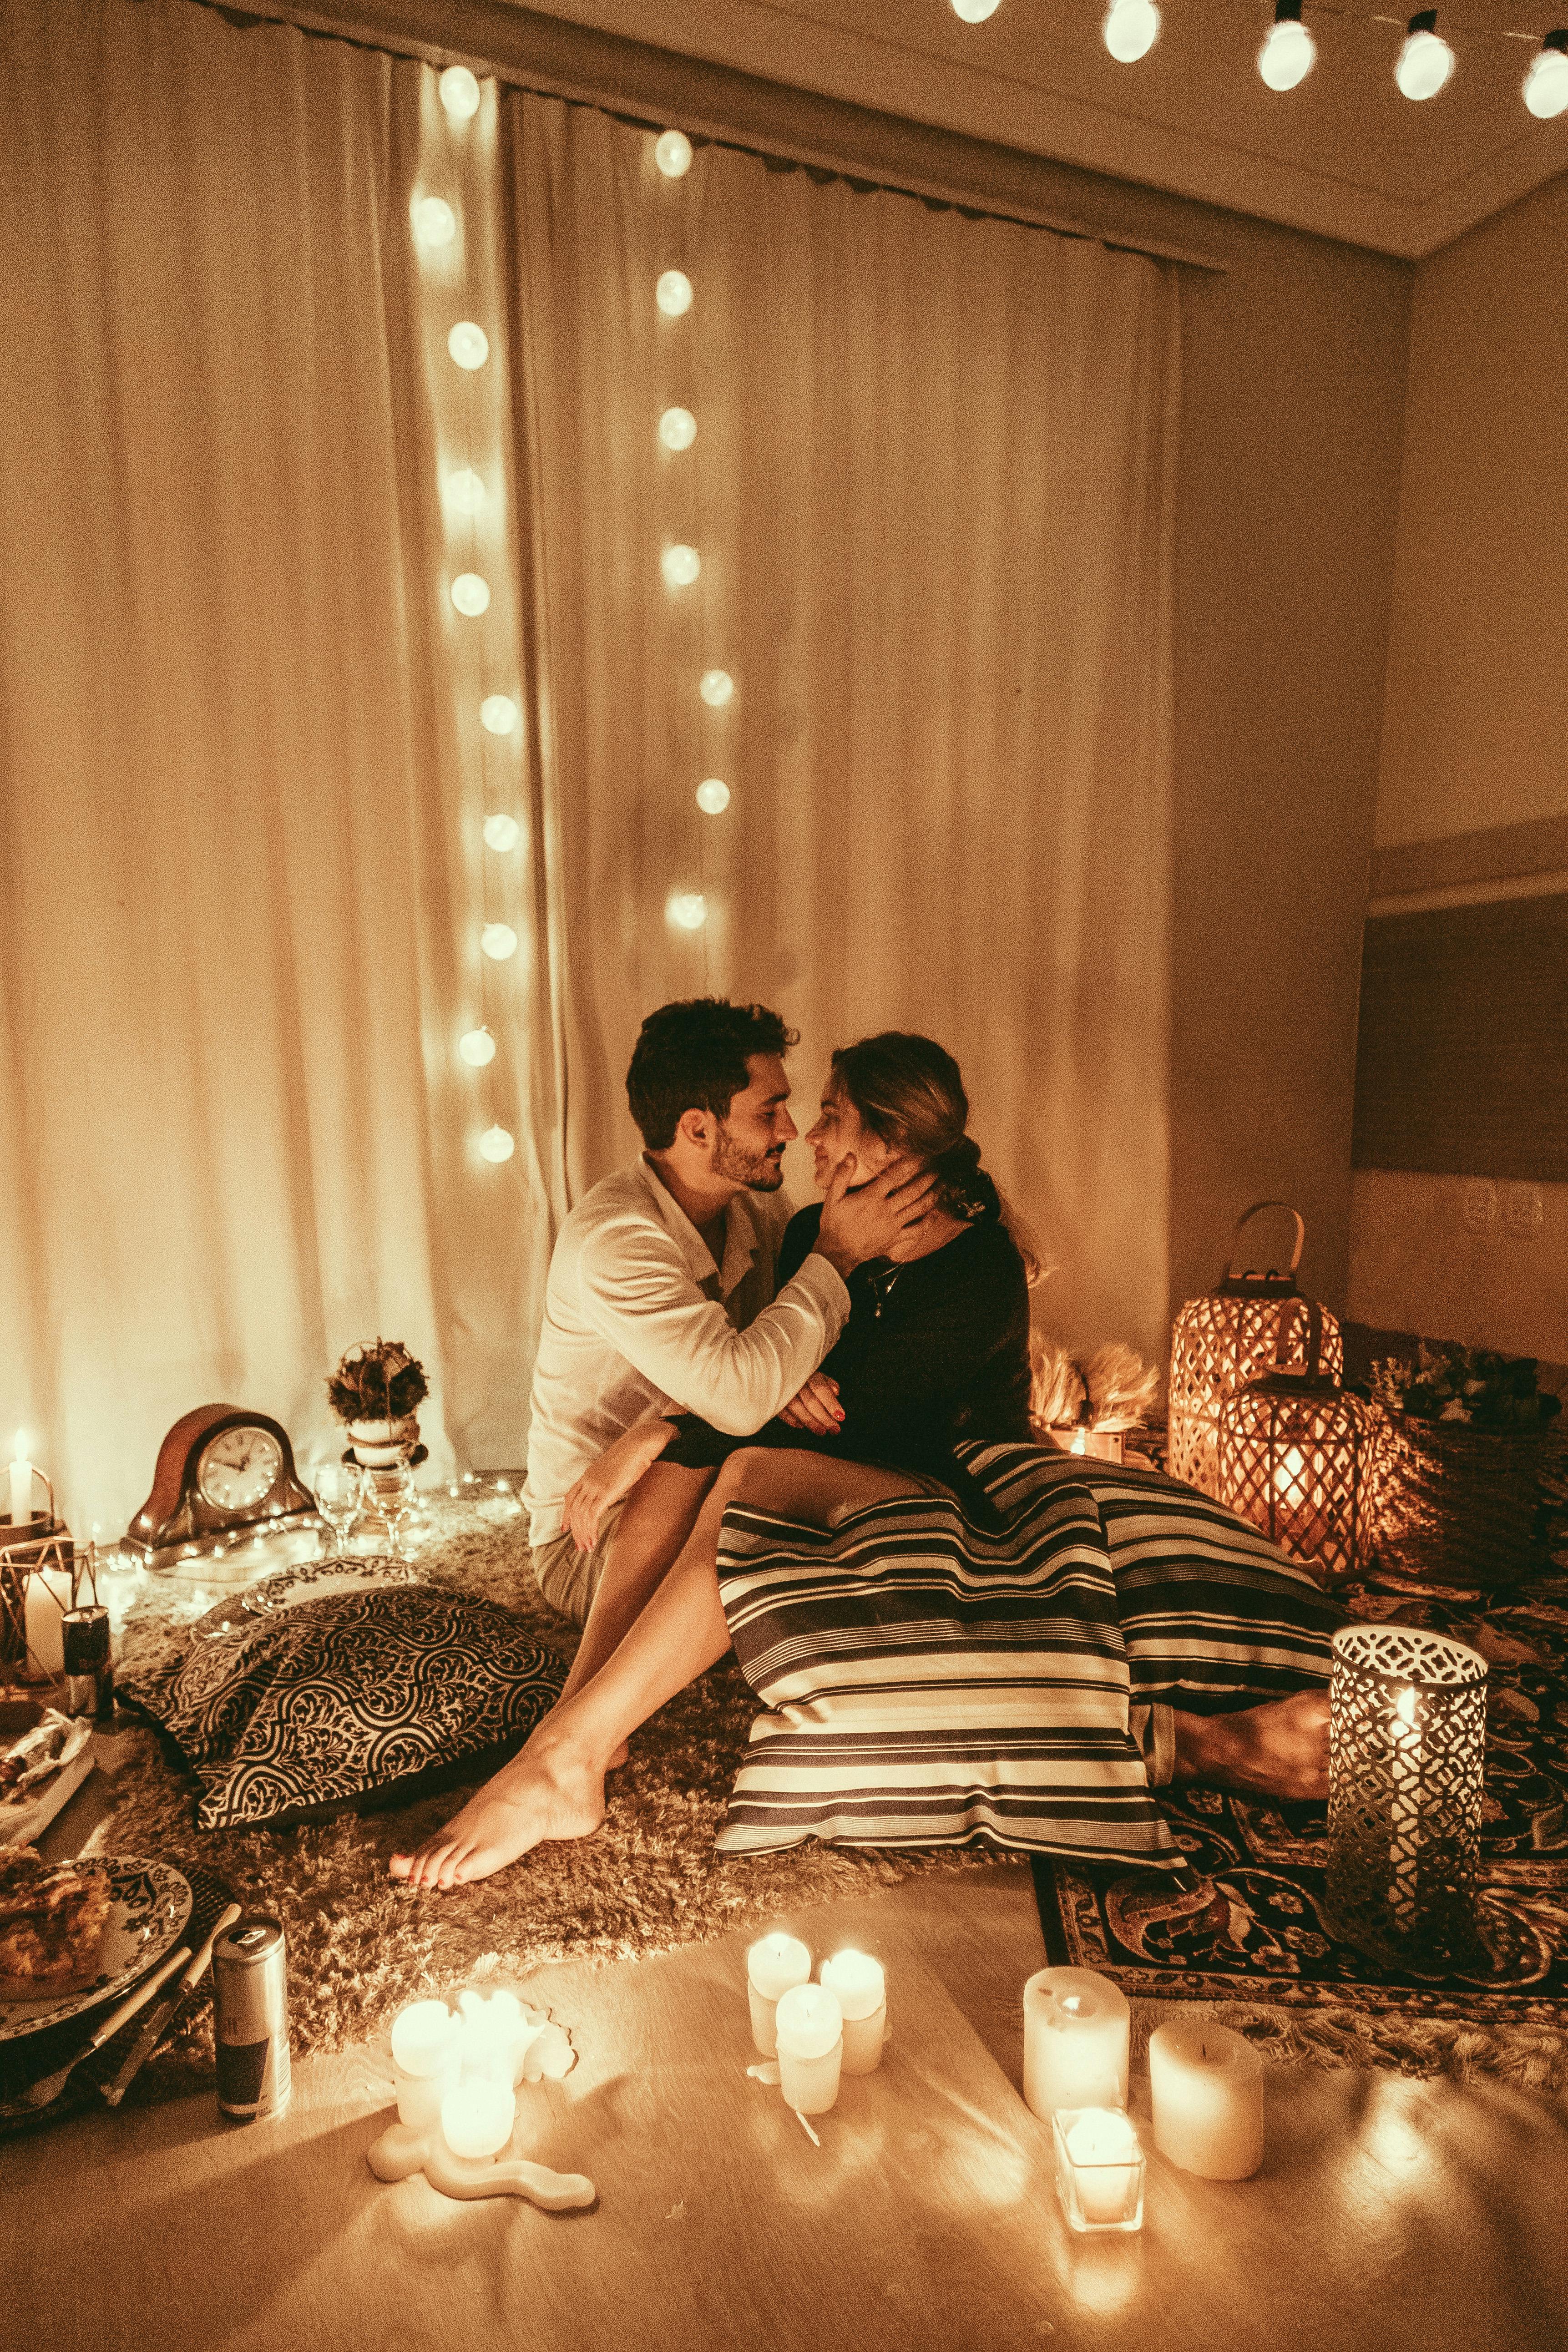 Una pareja estrechando lazos en torno a un escenario romántico | Foto: Pexels